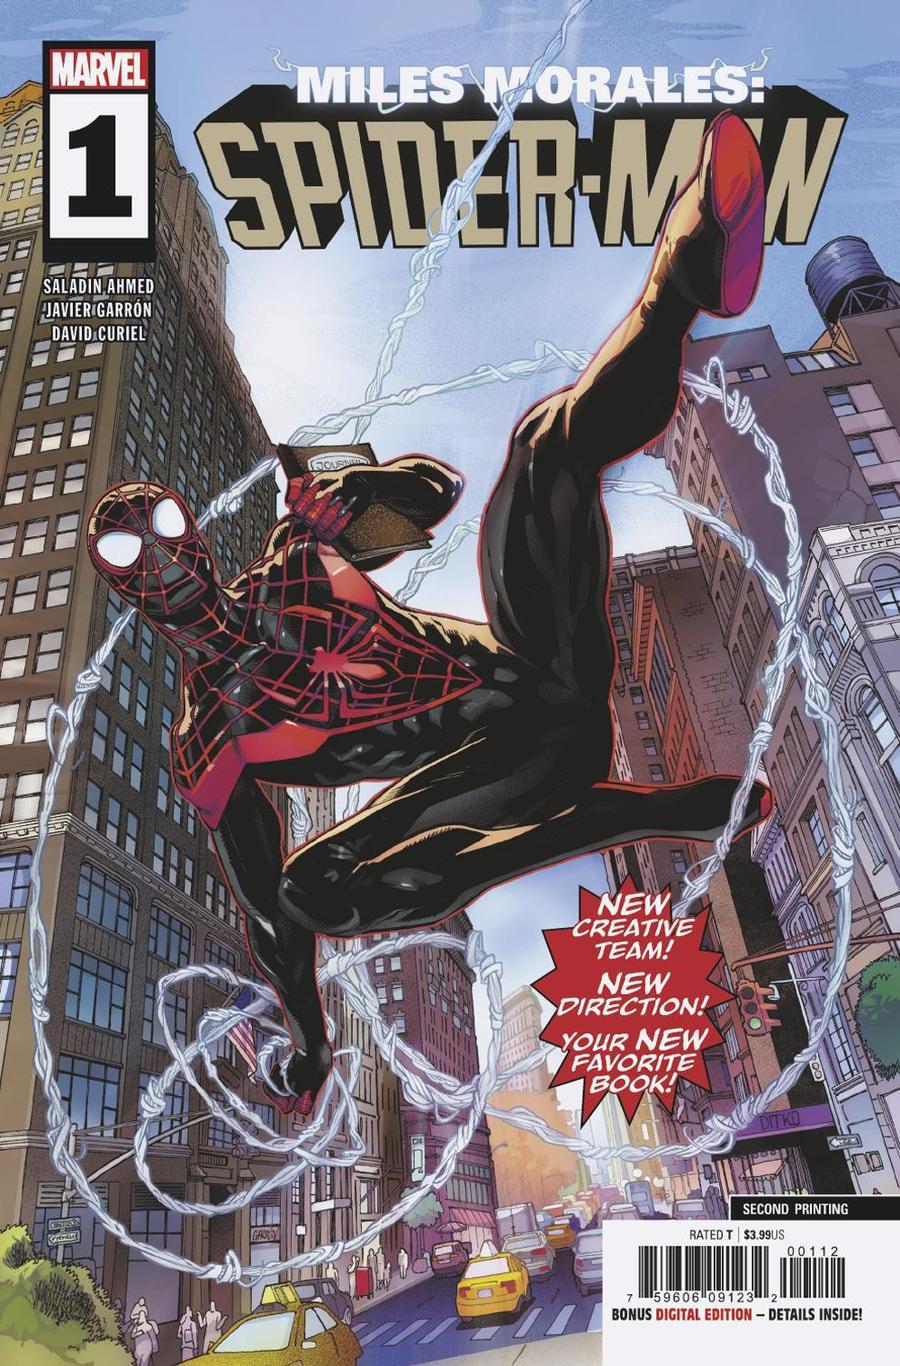 Miles Morales Spider-Man Vol. 1 #1